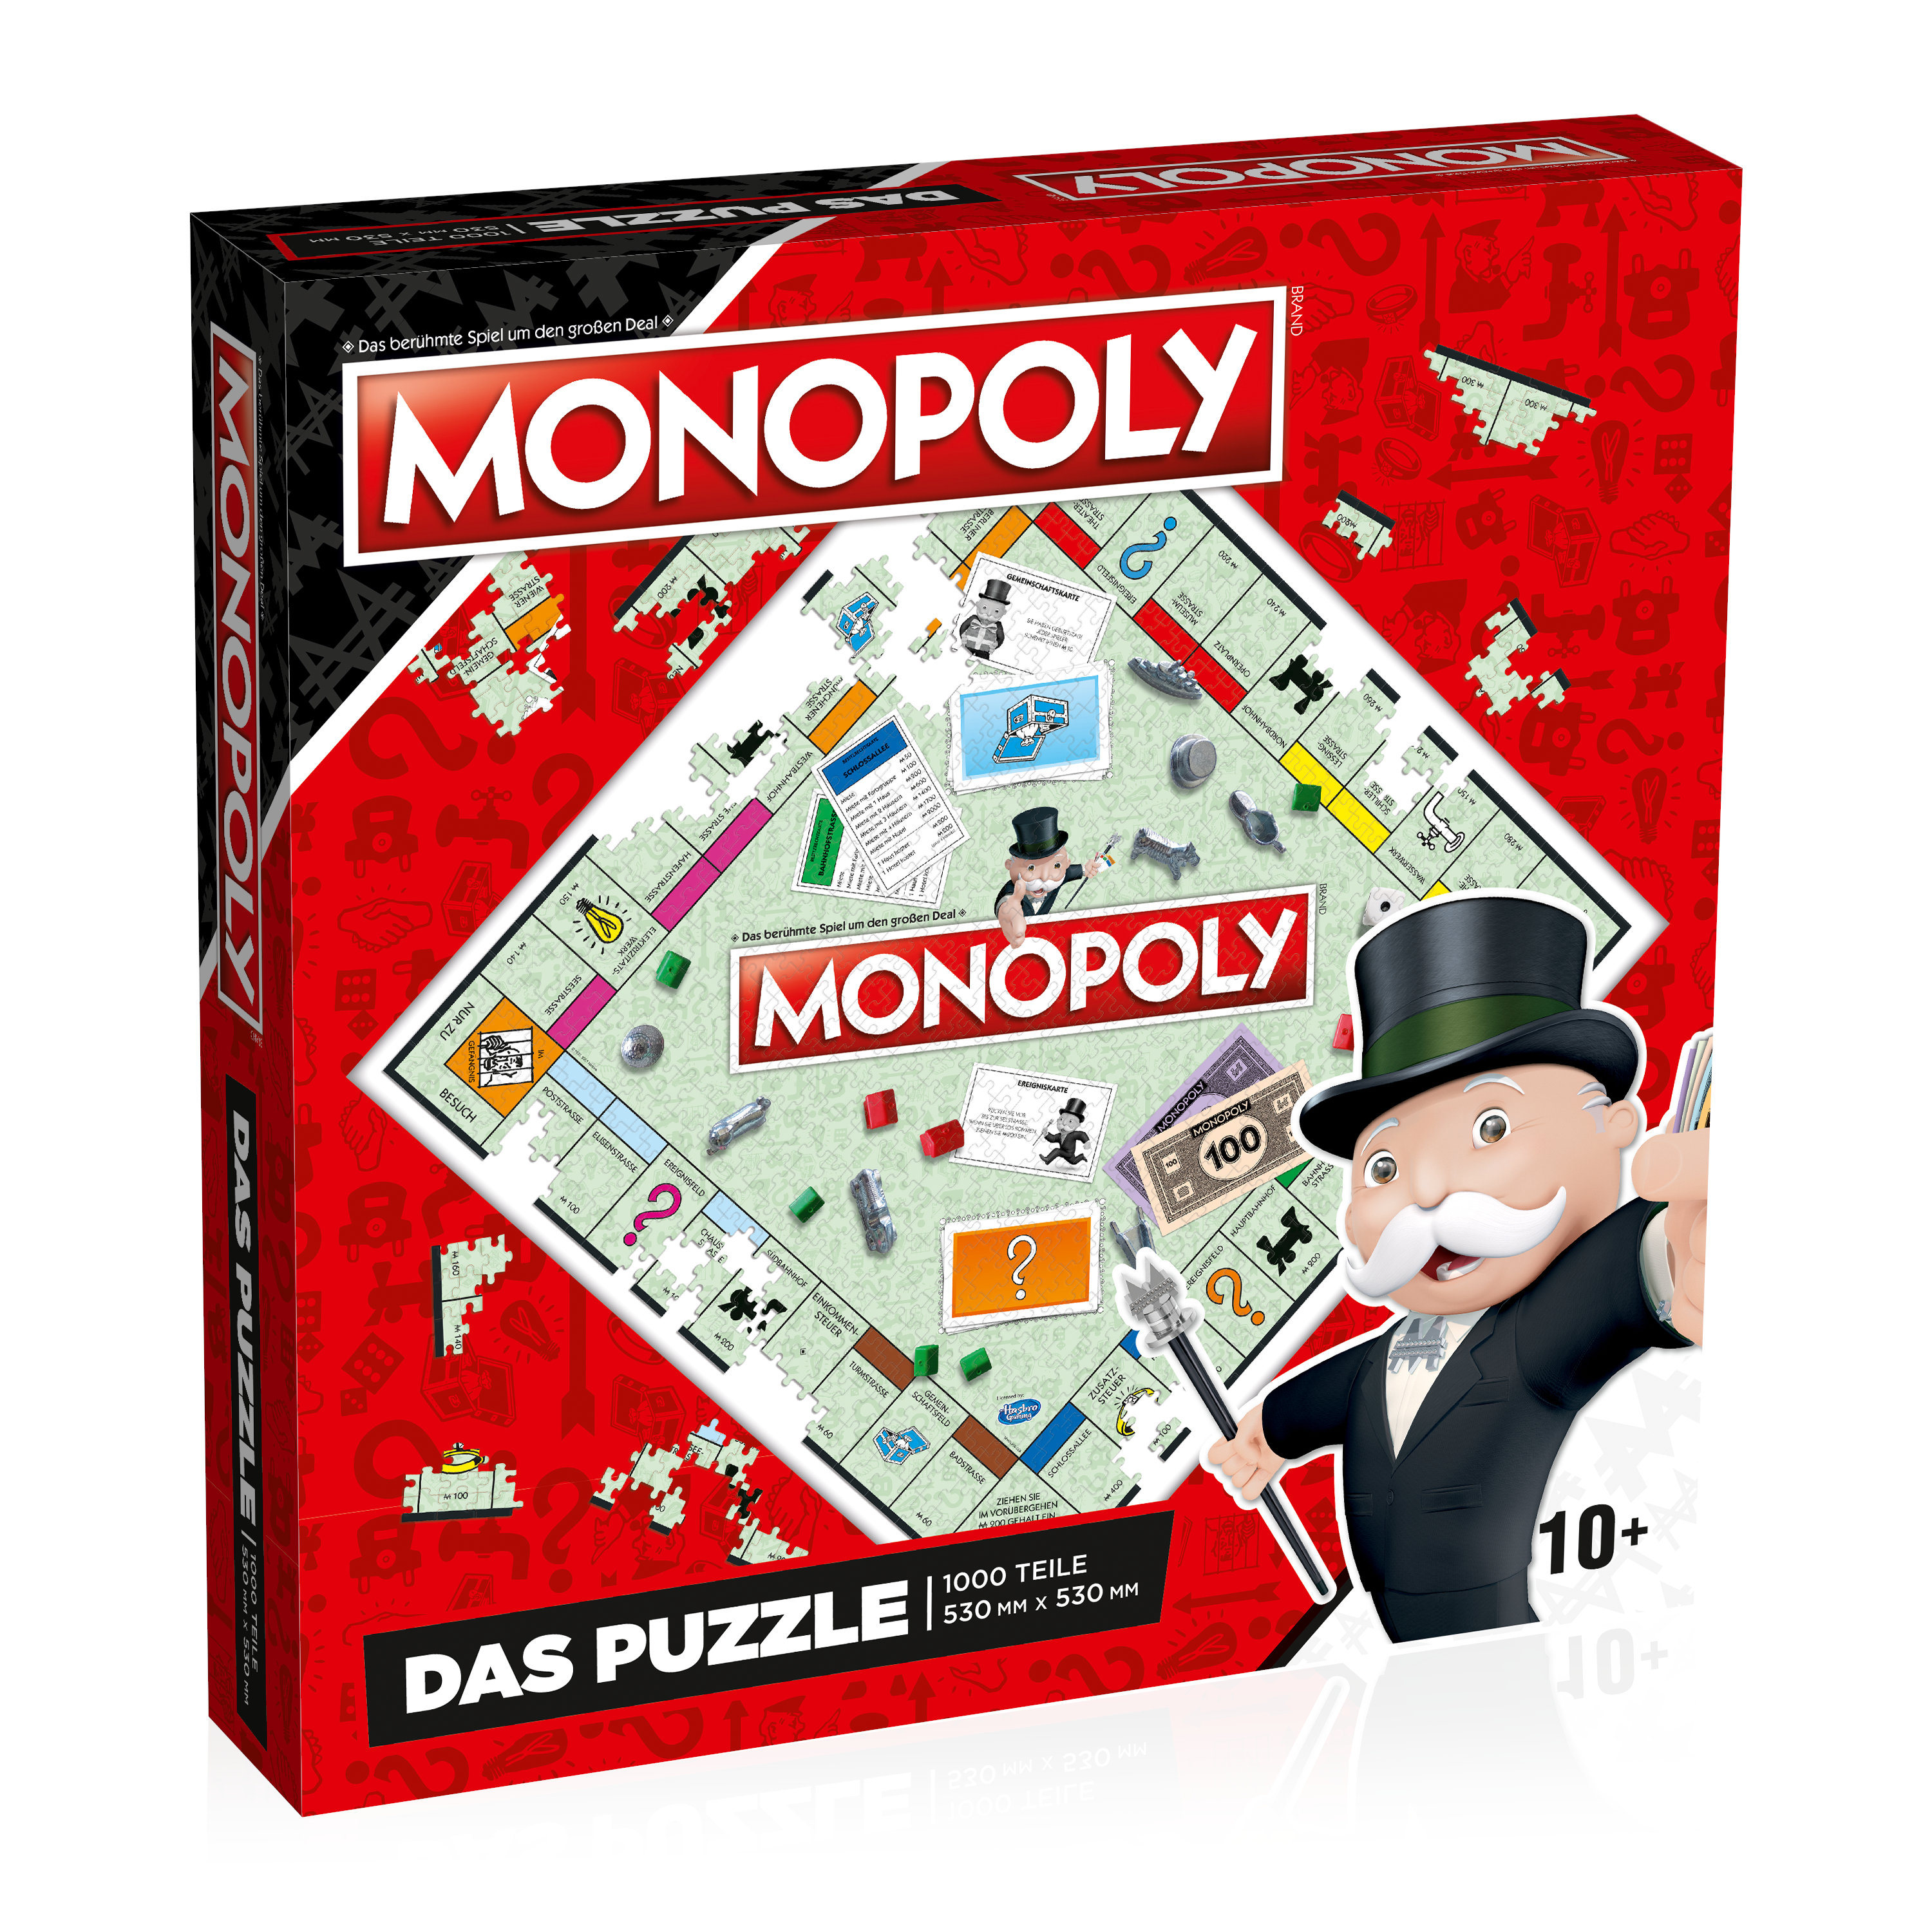 Monopoly No. 9 Original - Das Puzzle - 1000 Teile